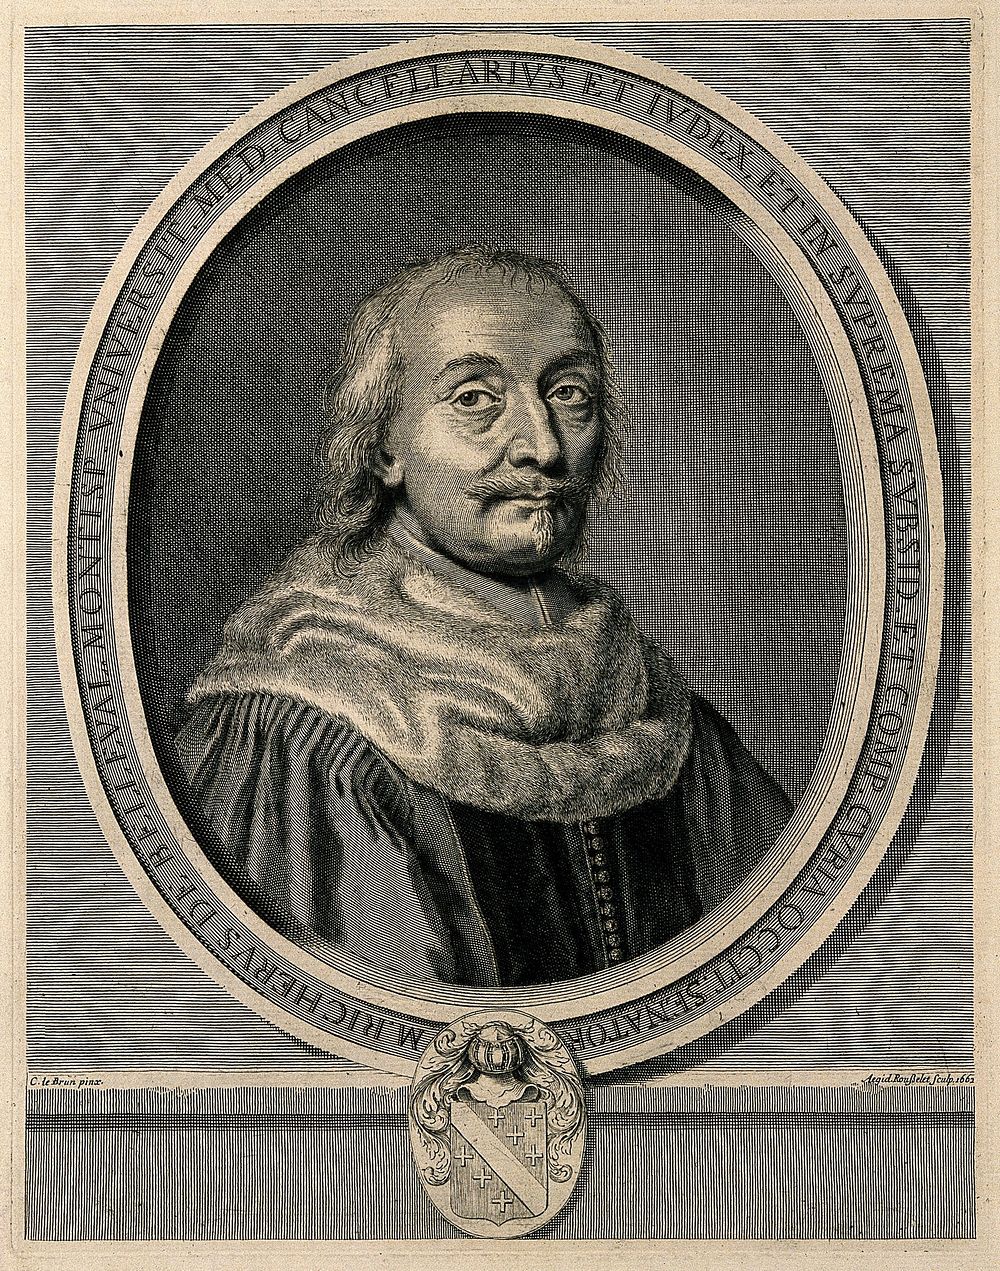 Martin Richer de Belleval. Line engraving by G. Rousselet, 1662, after C. le Brun.